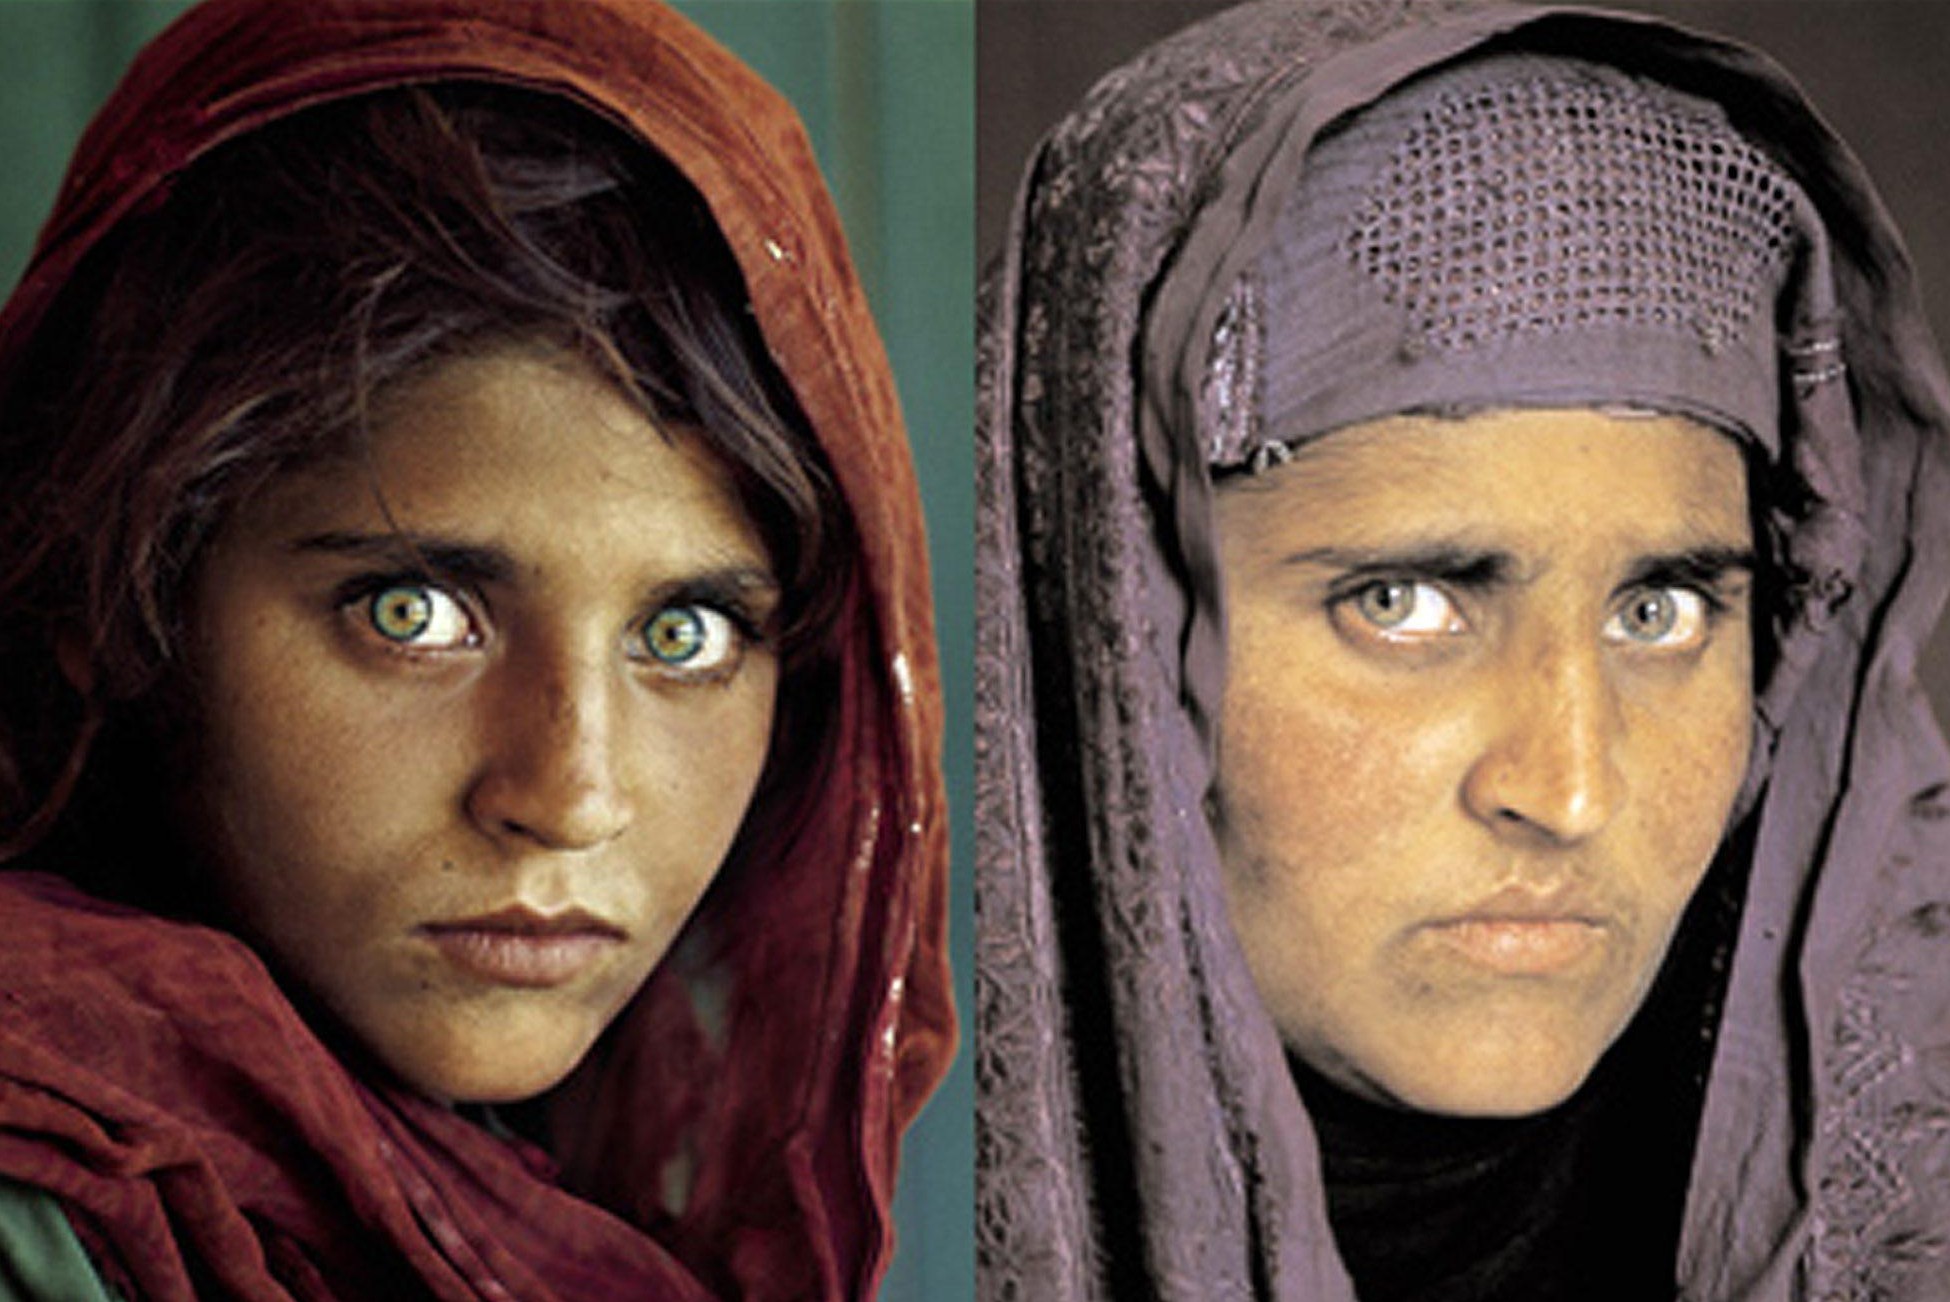 ‘Donna afgana dagli occhi verdi’ deportata in Italia